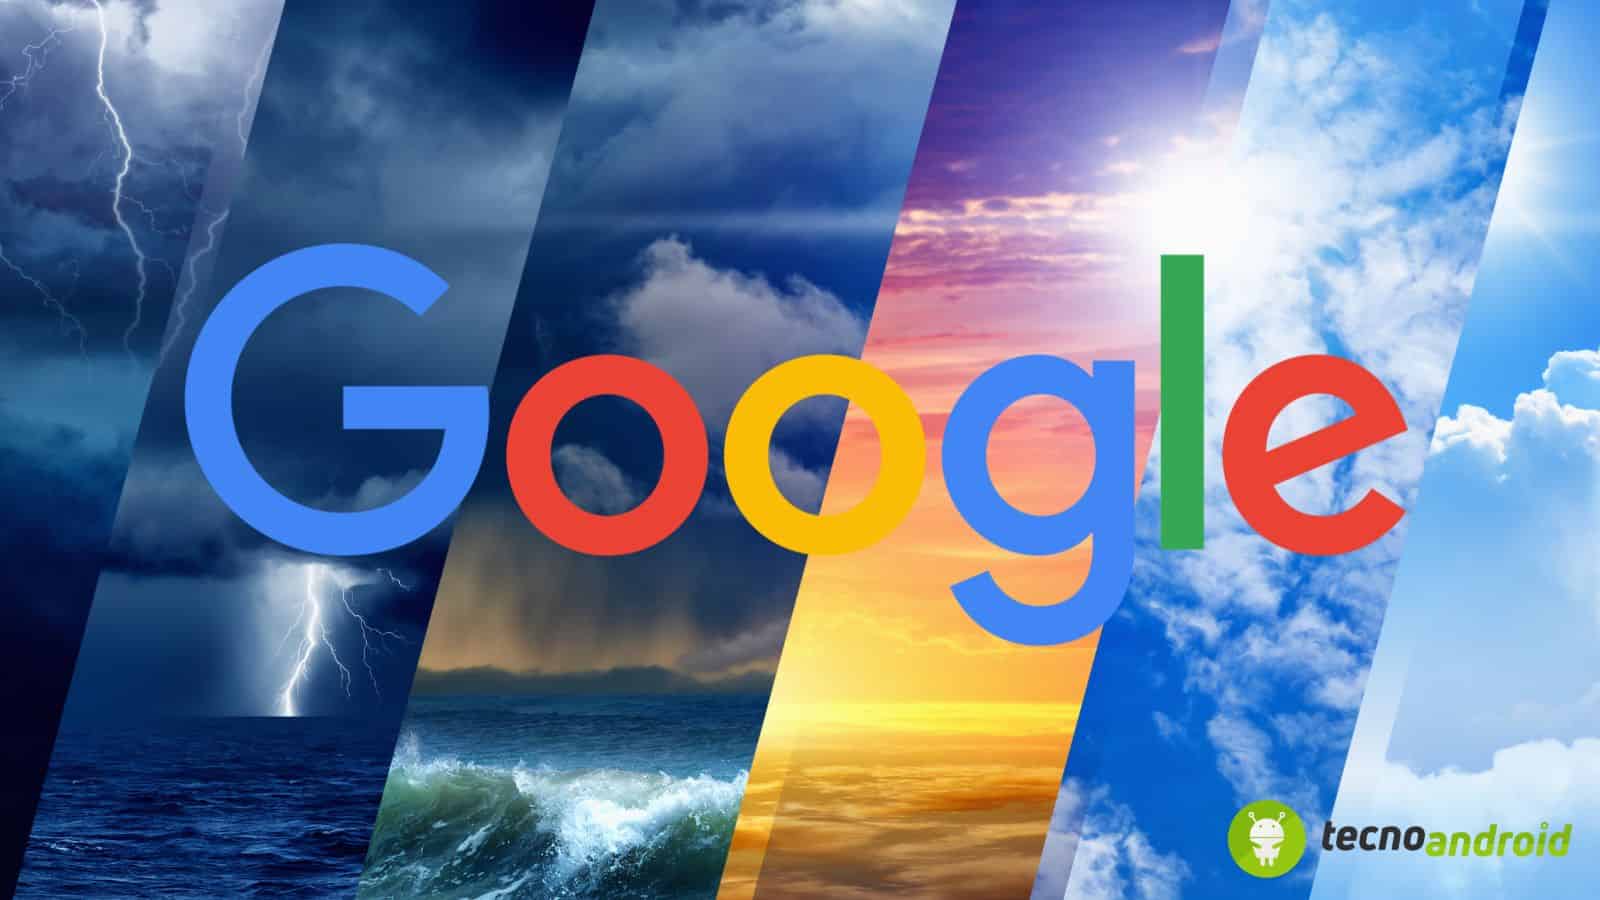 Google Meteo: dopo Pixel l'esclusiva grafica arriva su altri marchi